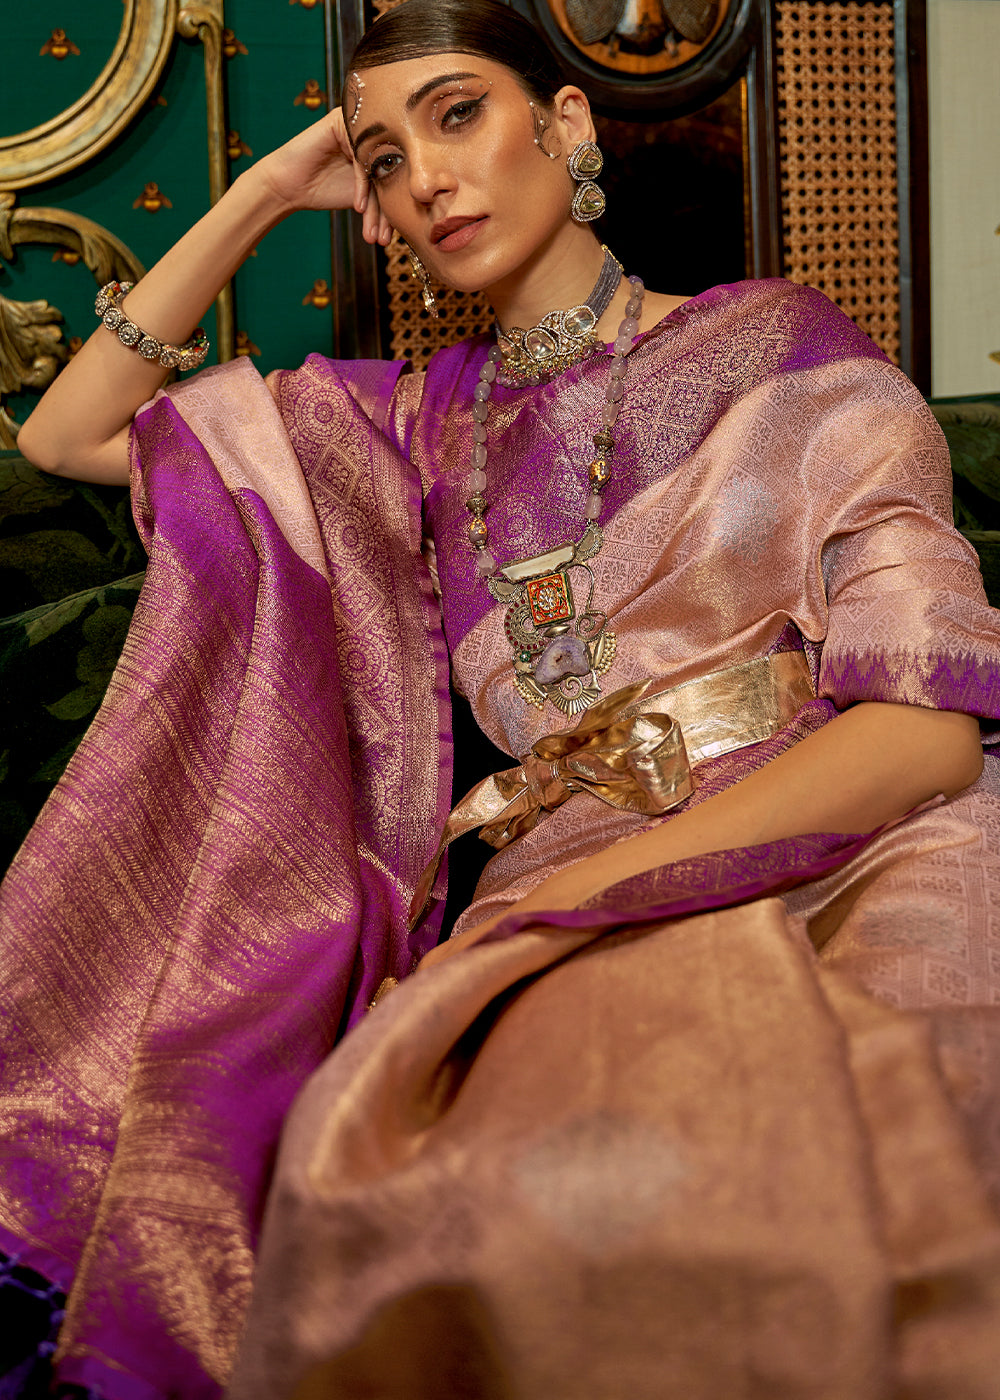 Shades Of Pink Zari Woven Silk Saree with Tassels on Pallu